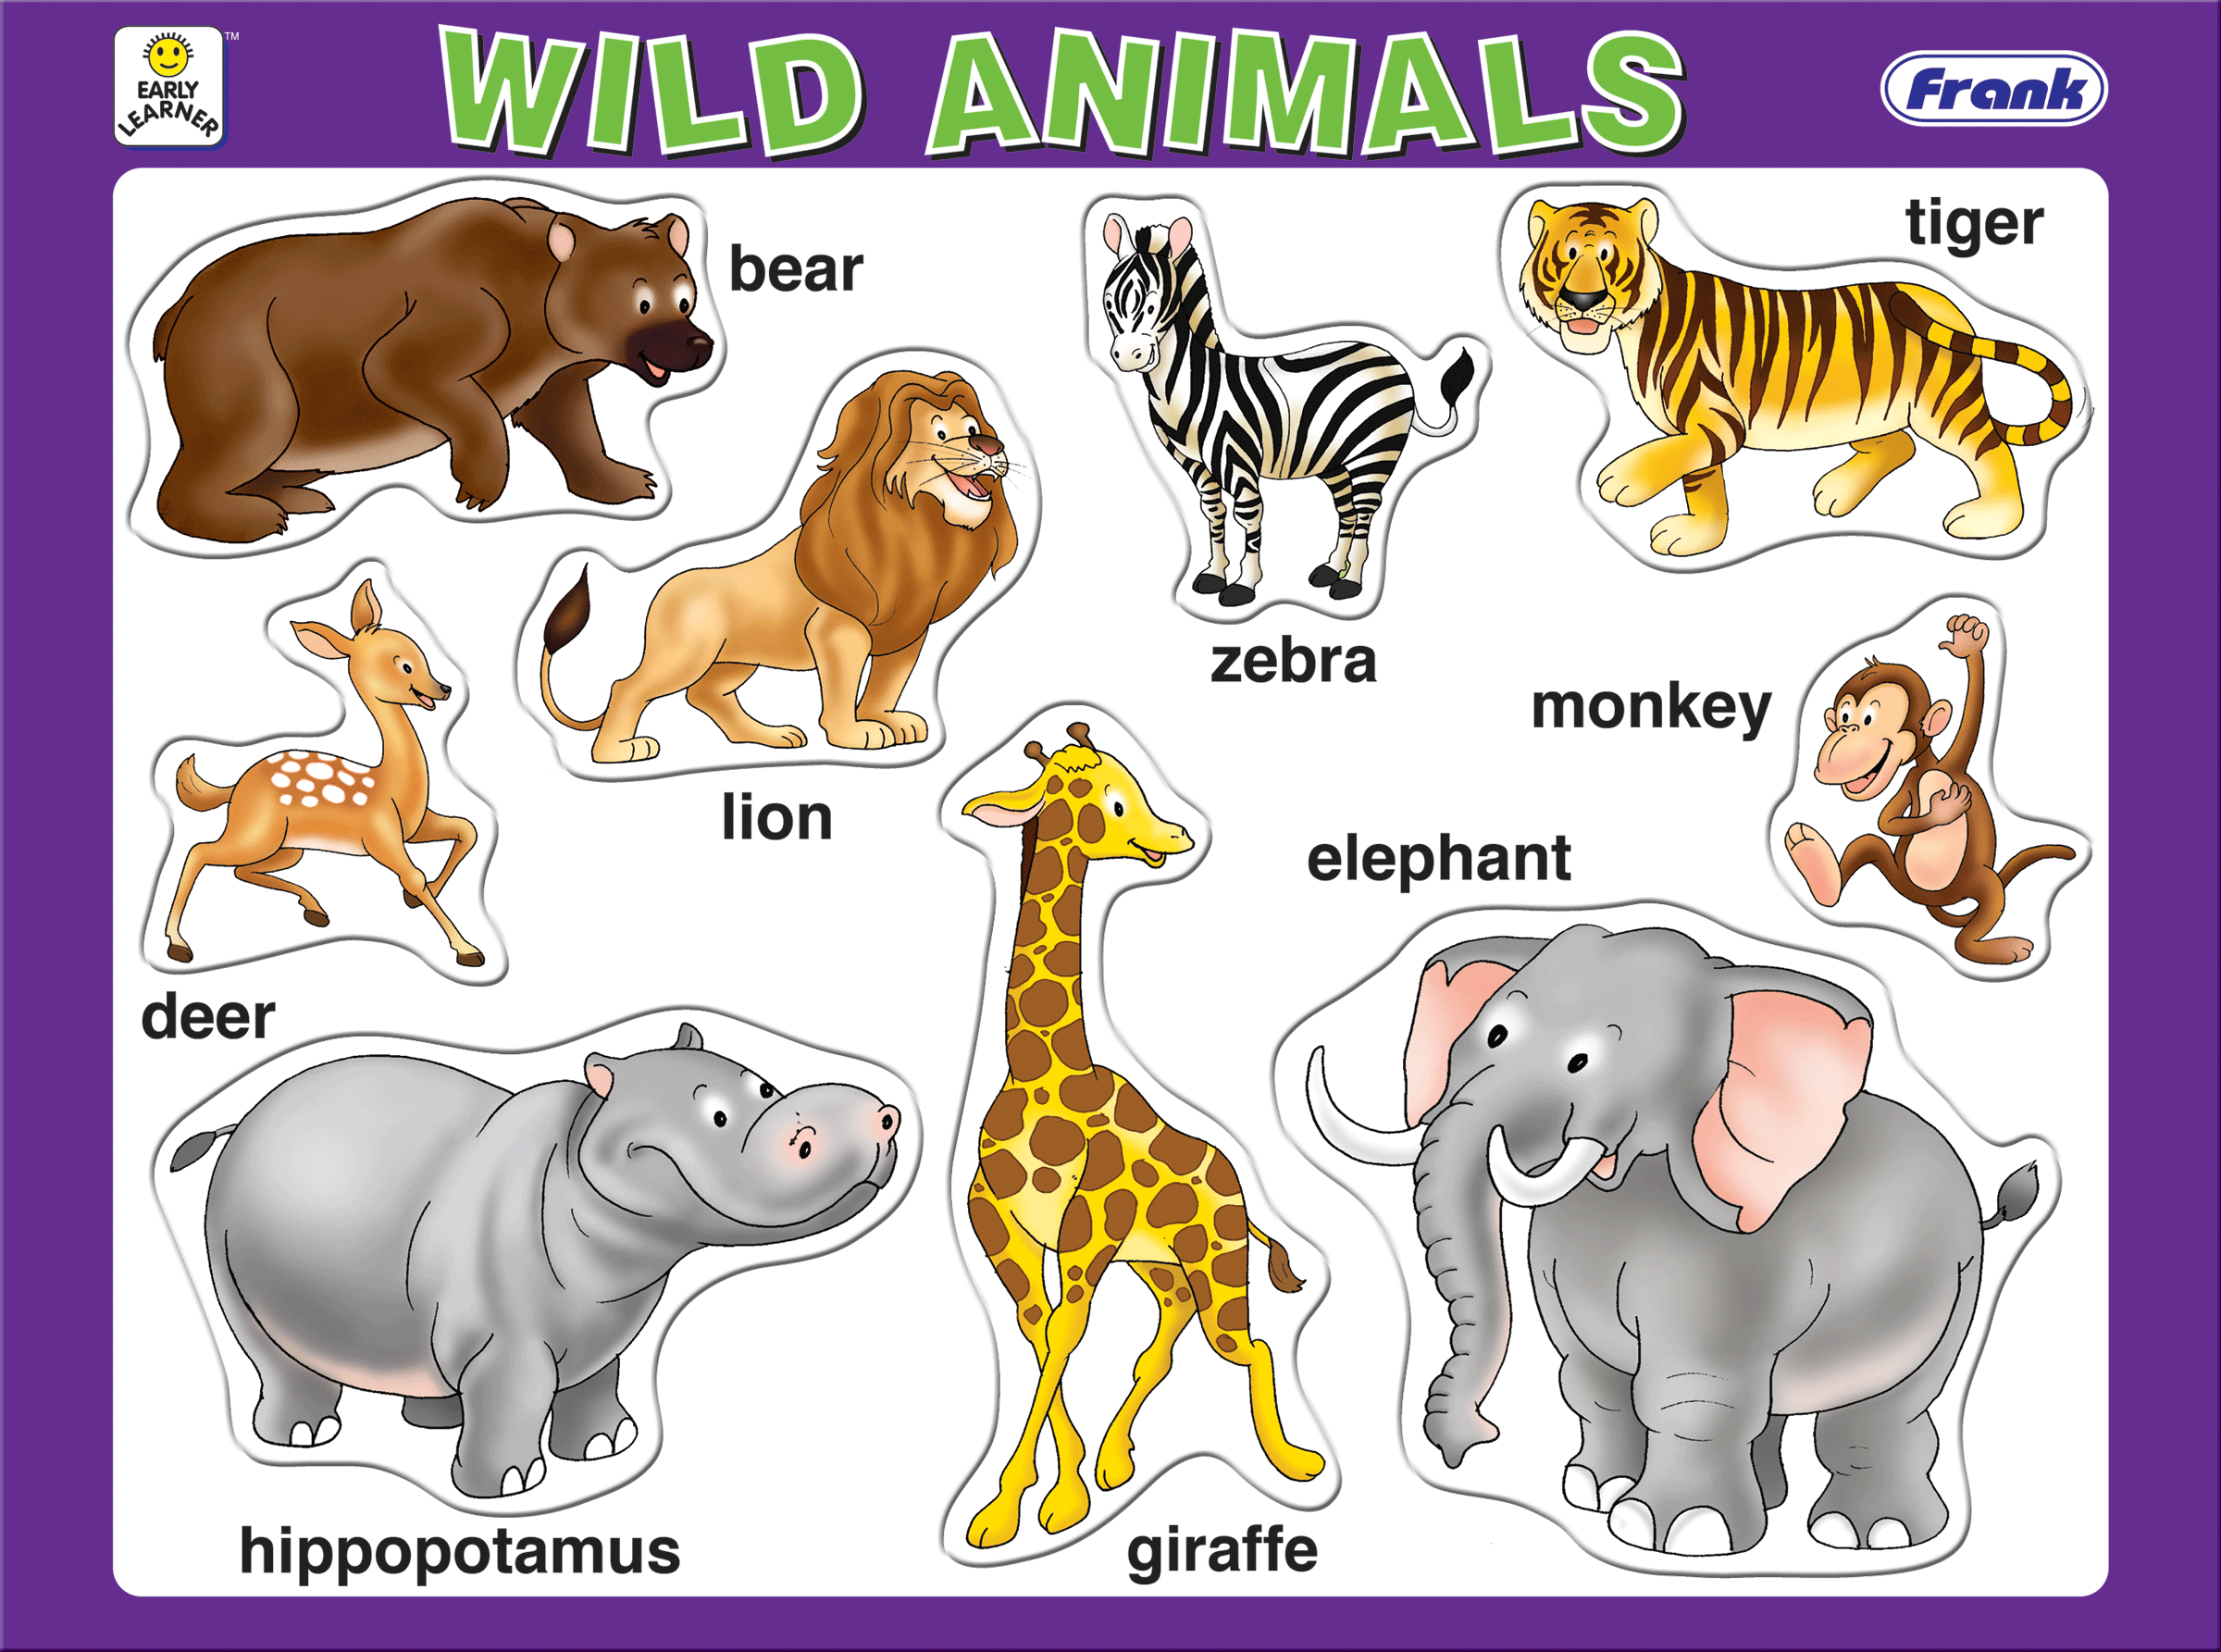 Английский 2 класс тема животных. Для детей. Животные. Животные на английском для детей. Дикие животные на английском для детей. Изображения животных для детей.